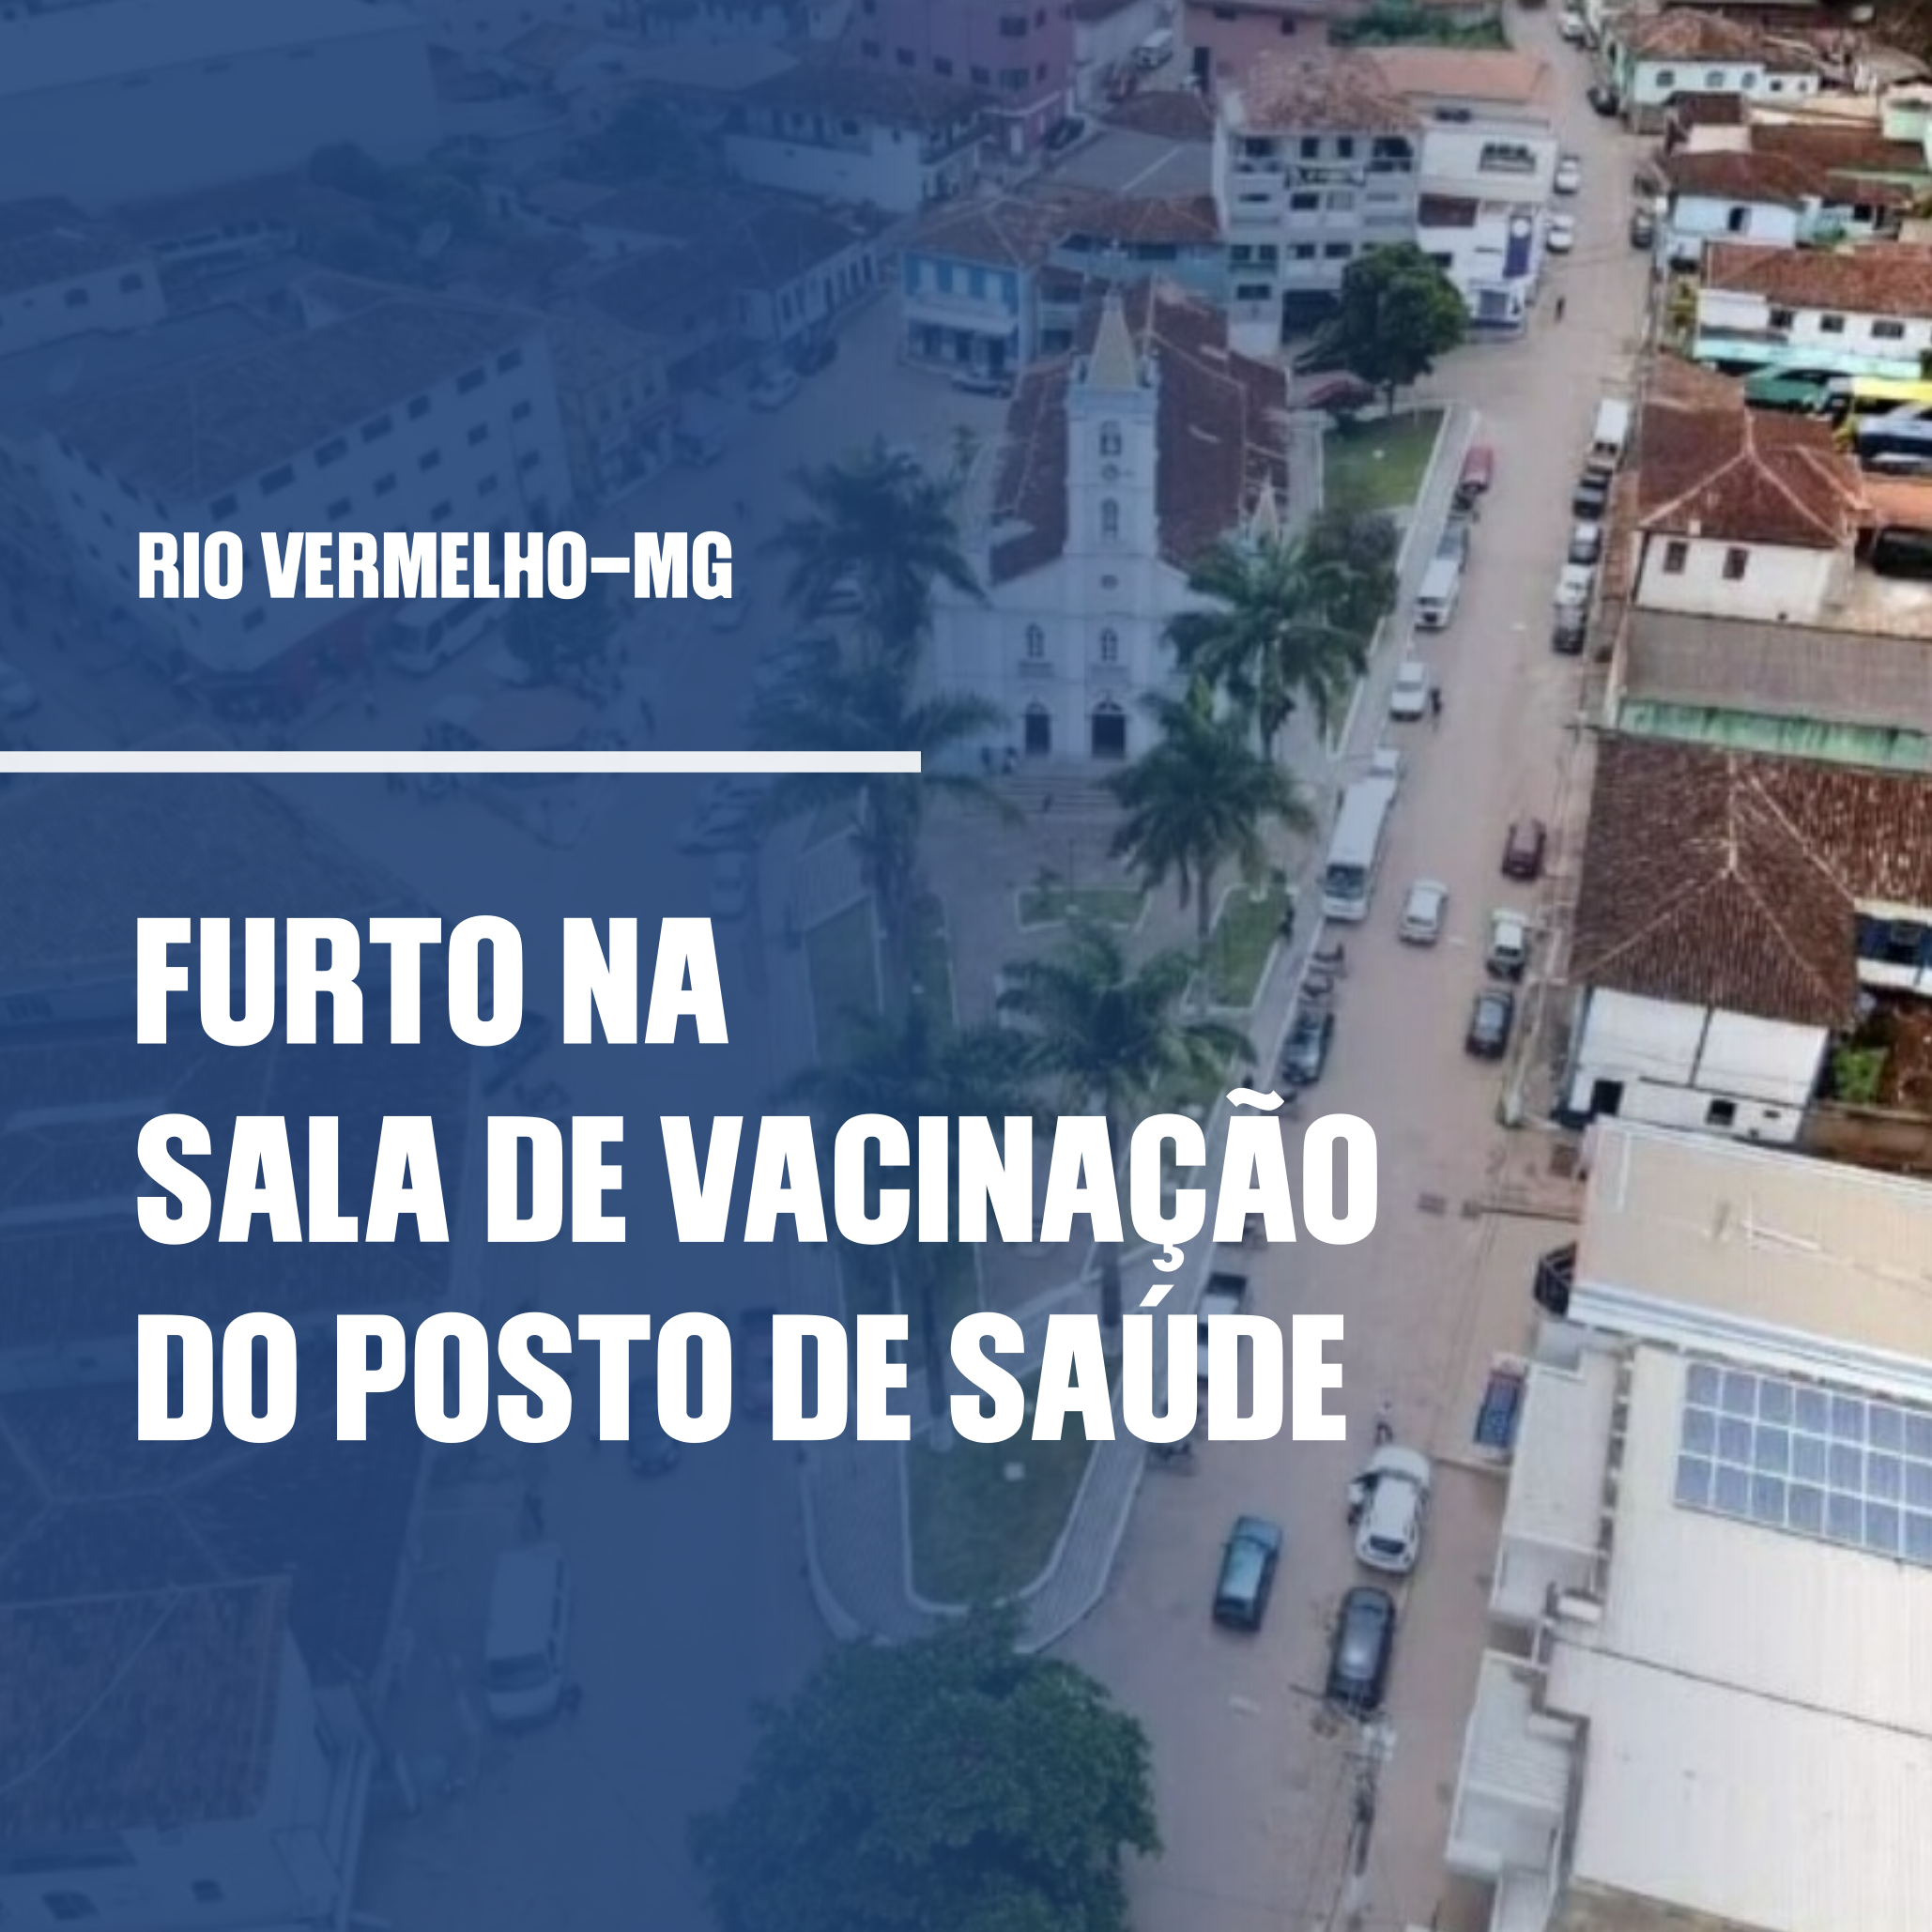 Você está visualizando atualmente FURTO DE VACINA EM RIO VERMELHO